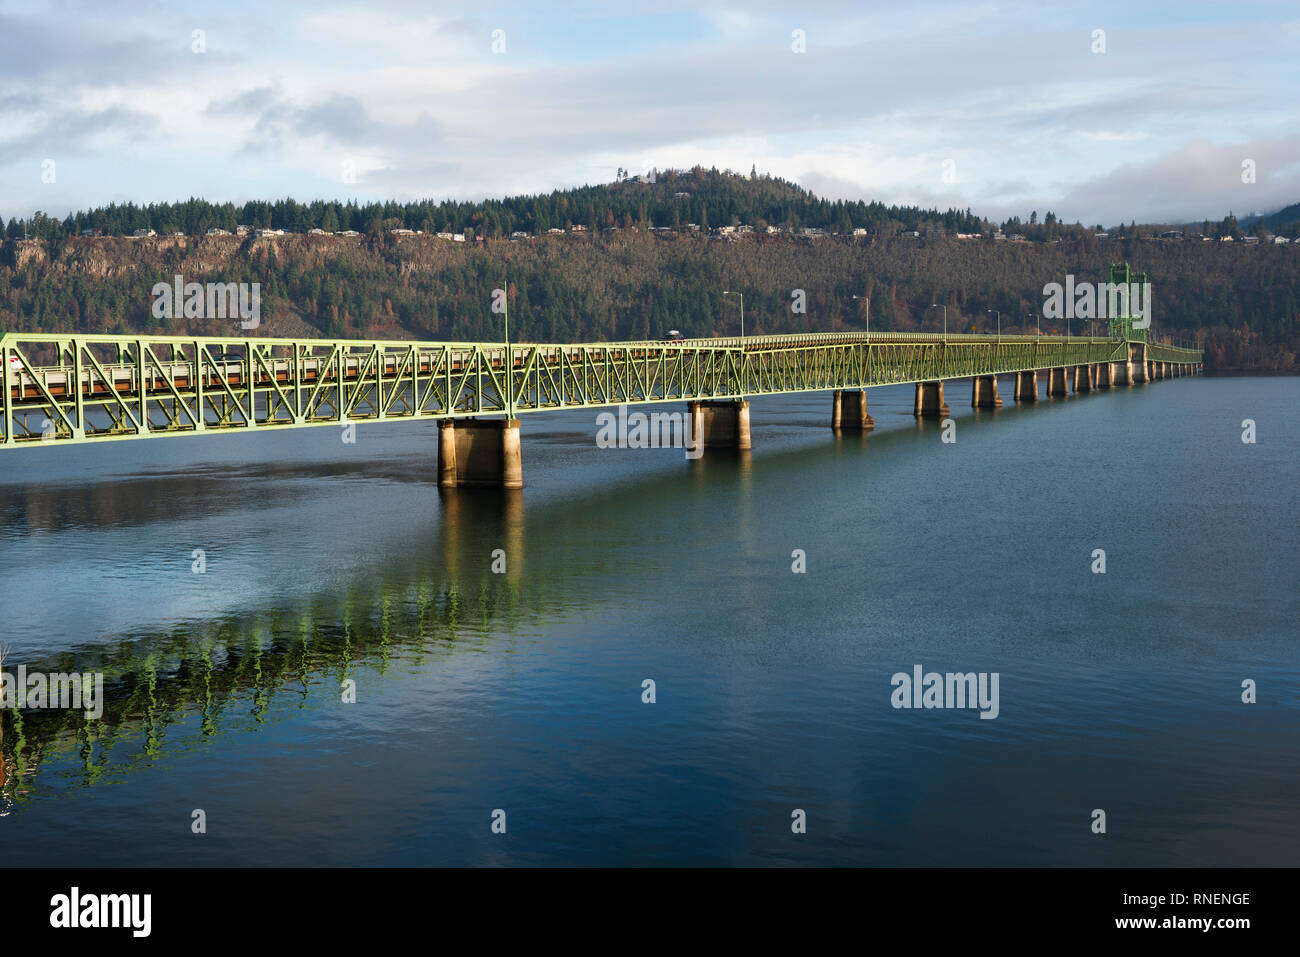 Le Pont de la rivière Hood dans la gorge du Columbia par un froid matin d'hiver. Il enjambe la rivière Columbia entre le capot et la rivière White Salmon Washington Banque D'Images